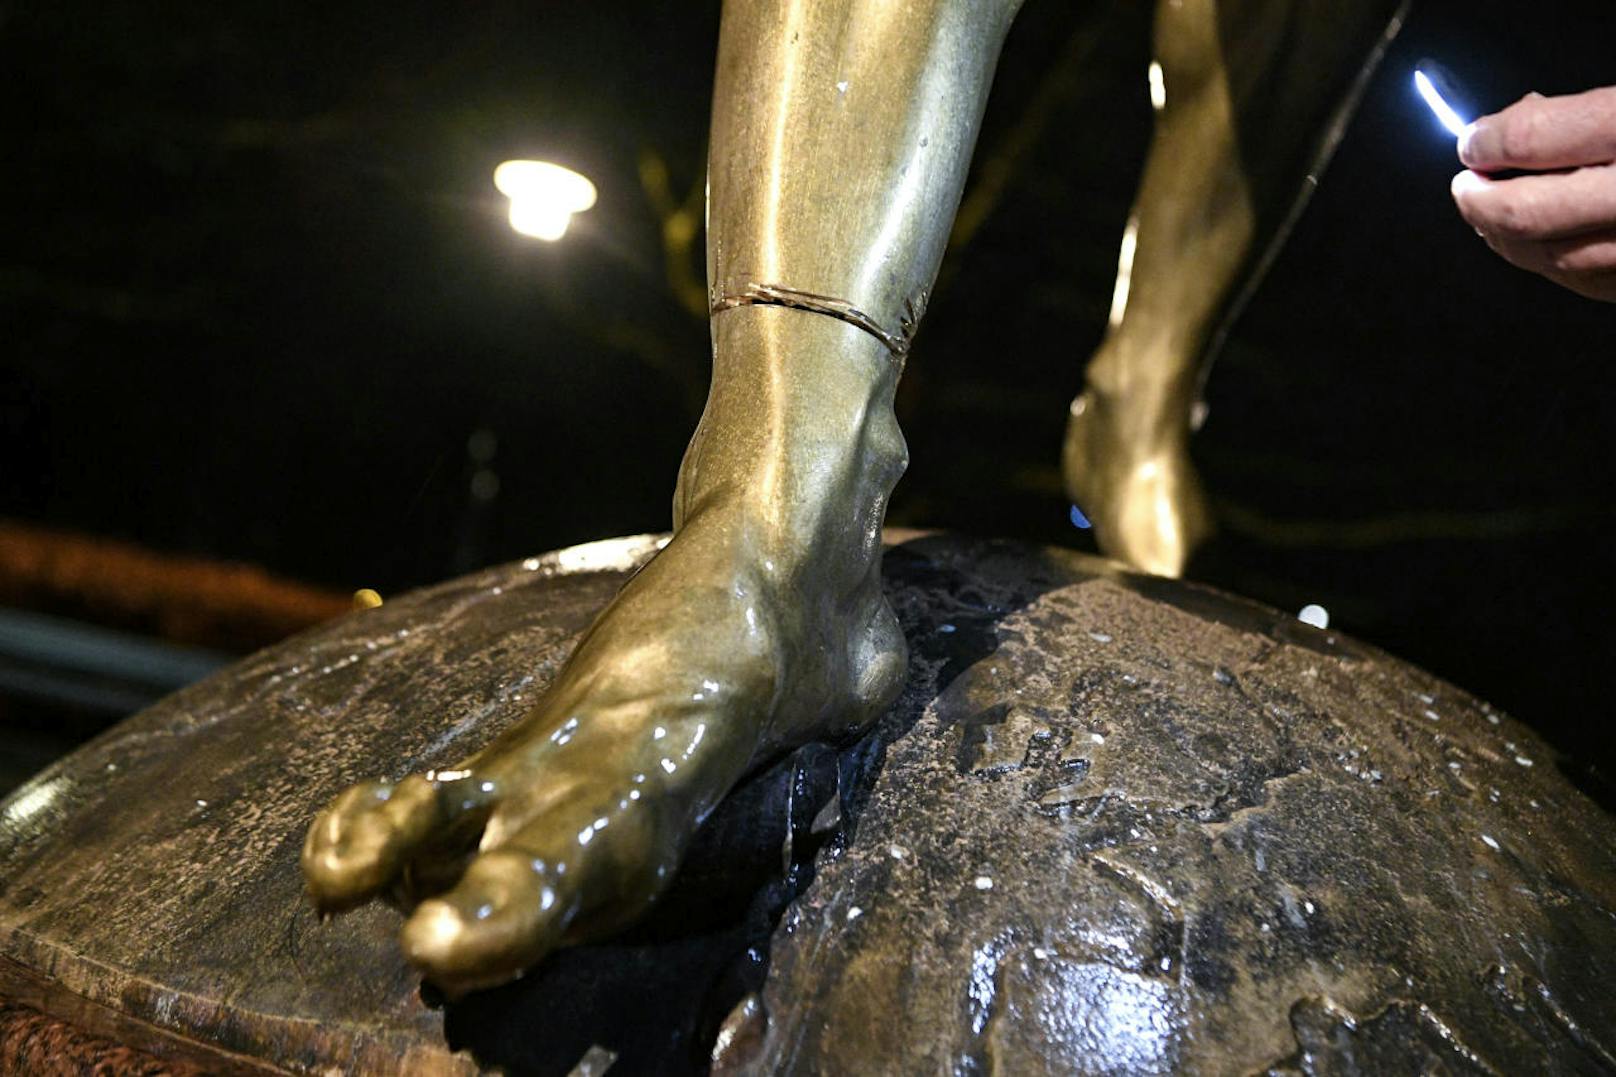 In der Nacht zum 12. Dezember haben Unbekannte mit einem Trennschleifer beinahe den kompletten rechten Fuß durchschnitten. 